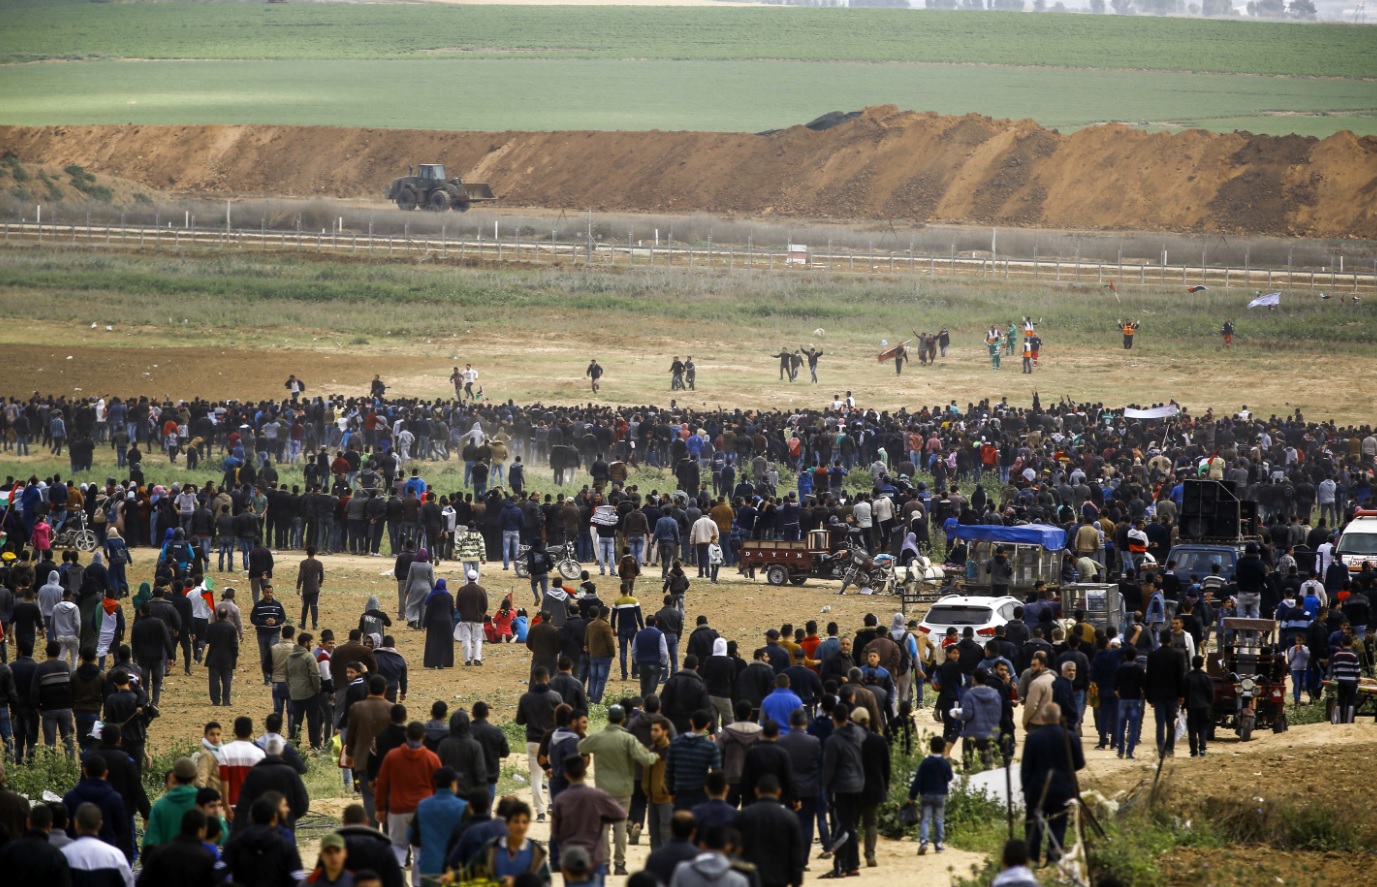 Warga Palestina melakukan aksi protes di dekat perbatasan dengan Jabalia, Israel di utara Jalur Gaza pada 30 Maret 2018. (Foto: Mohammed ABED / AFP)